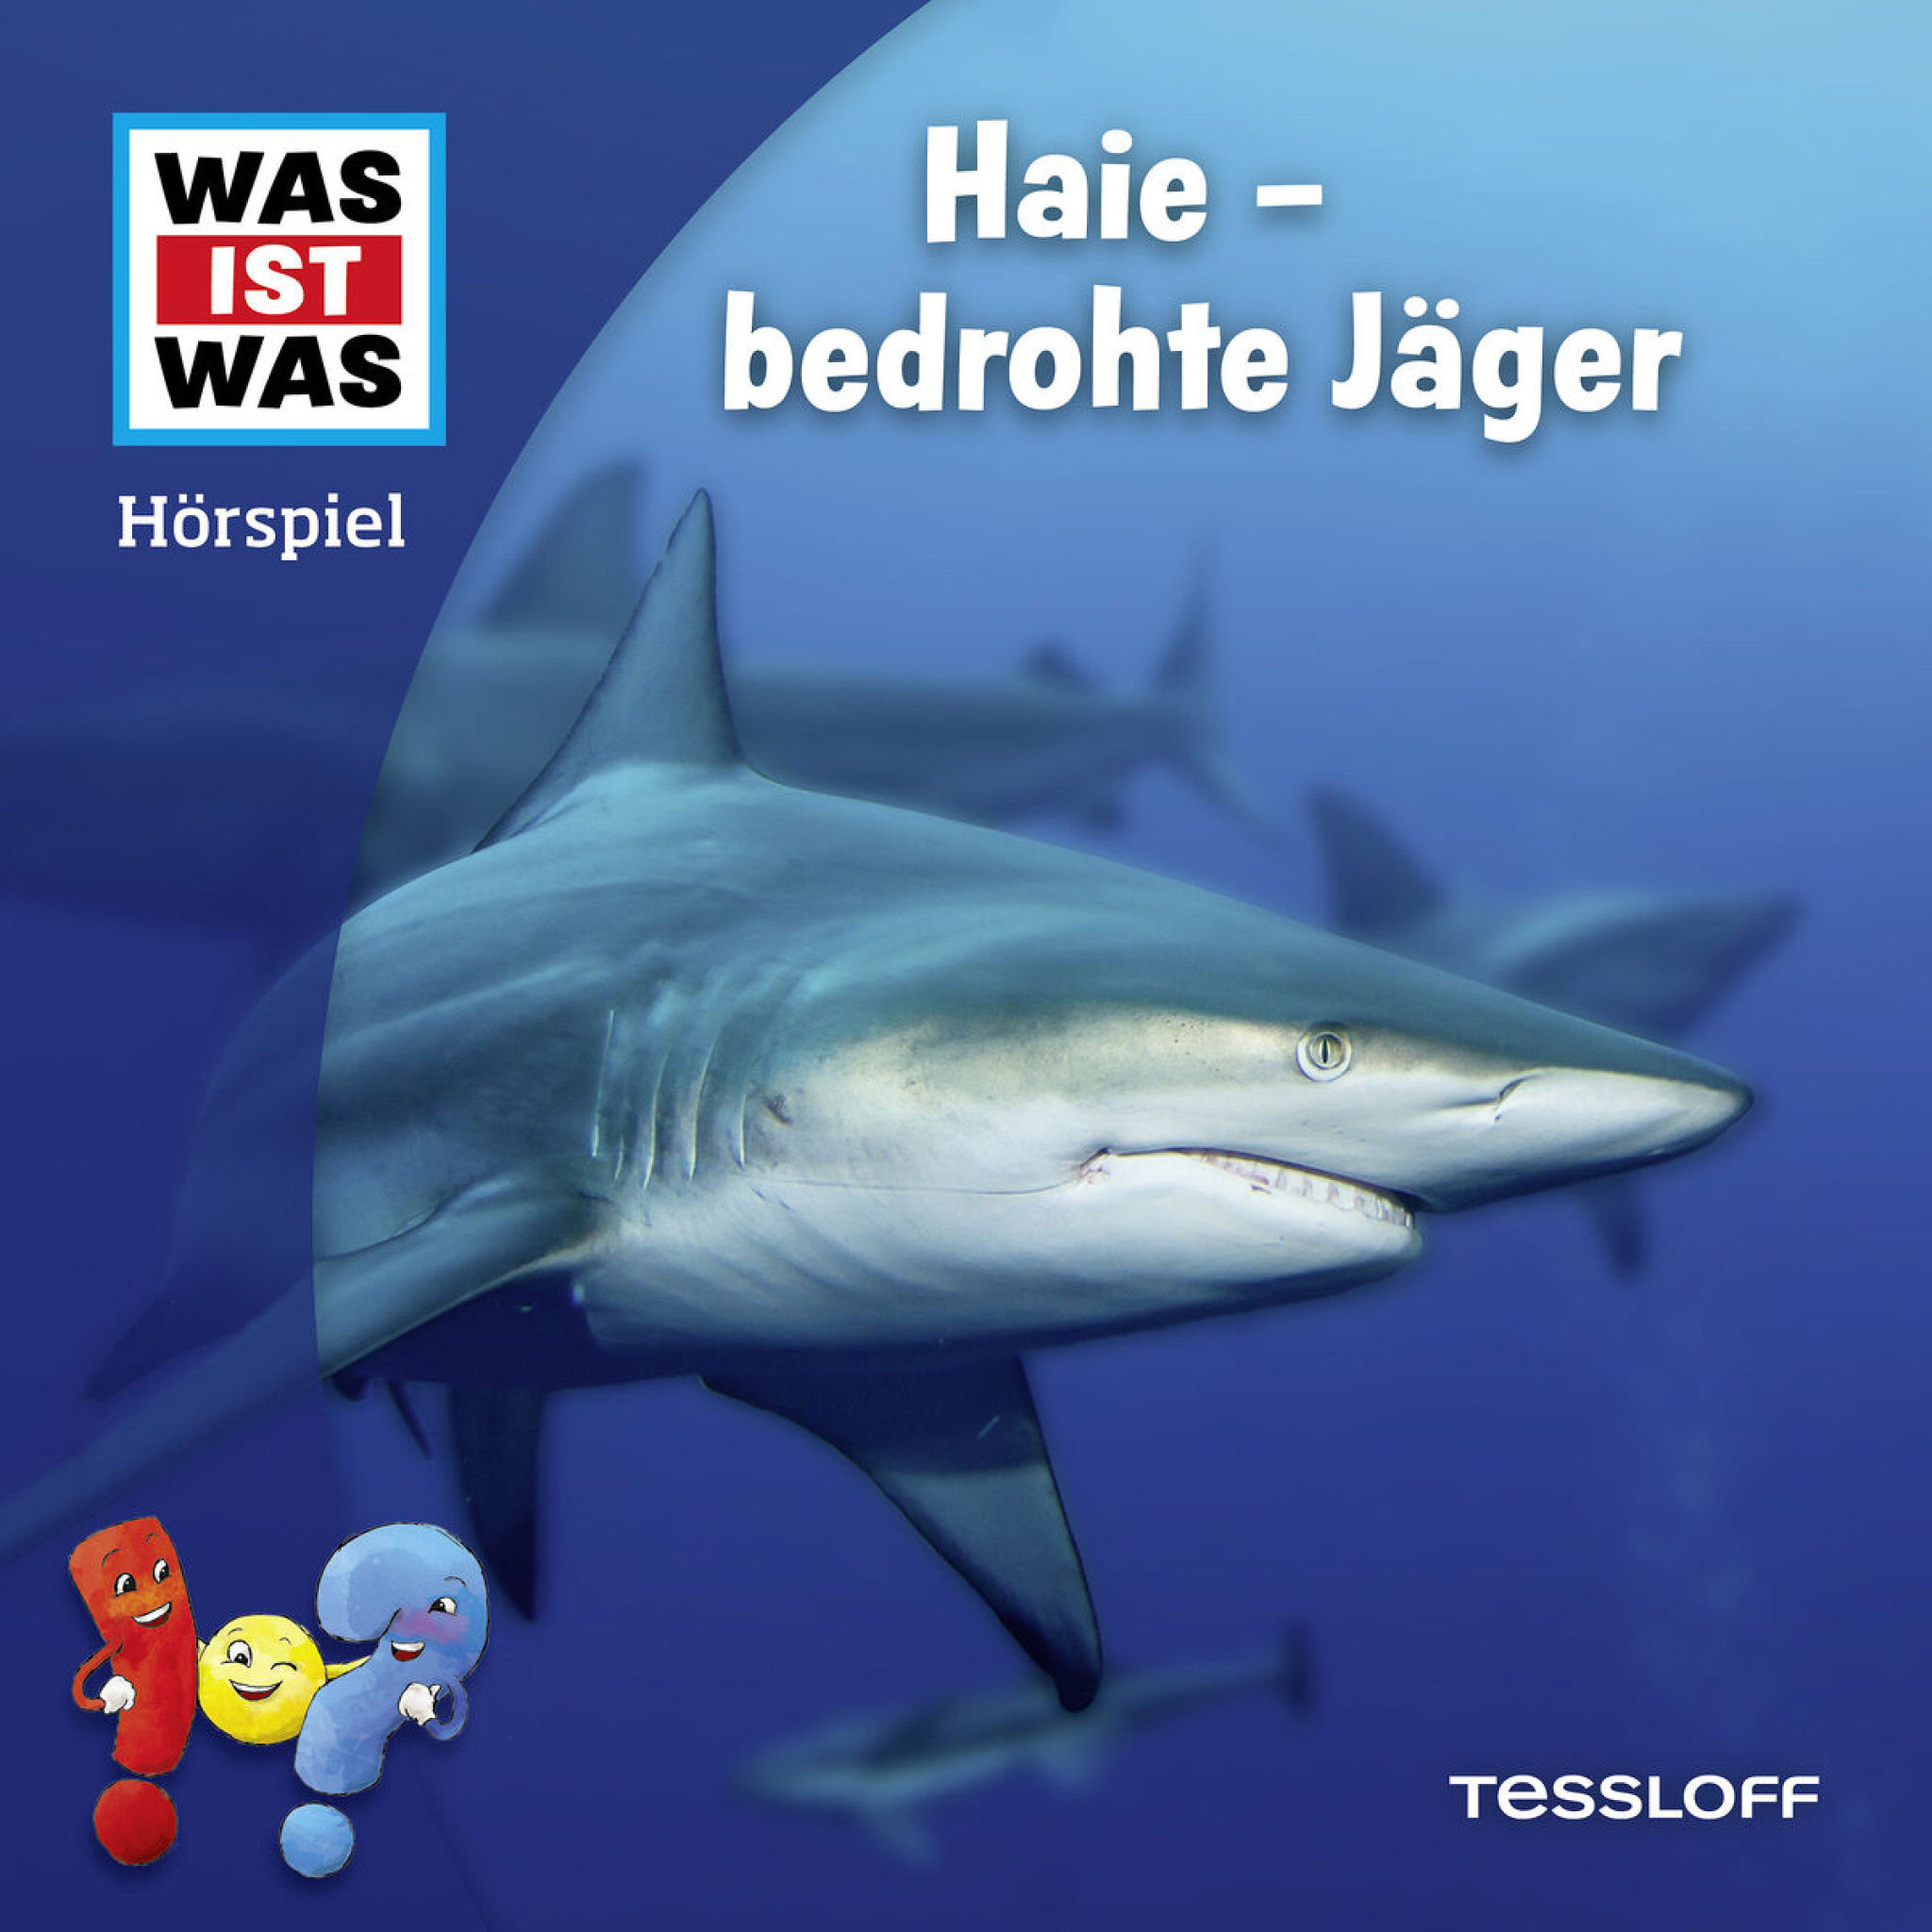 Haie - bedrohte Jäger